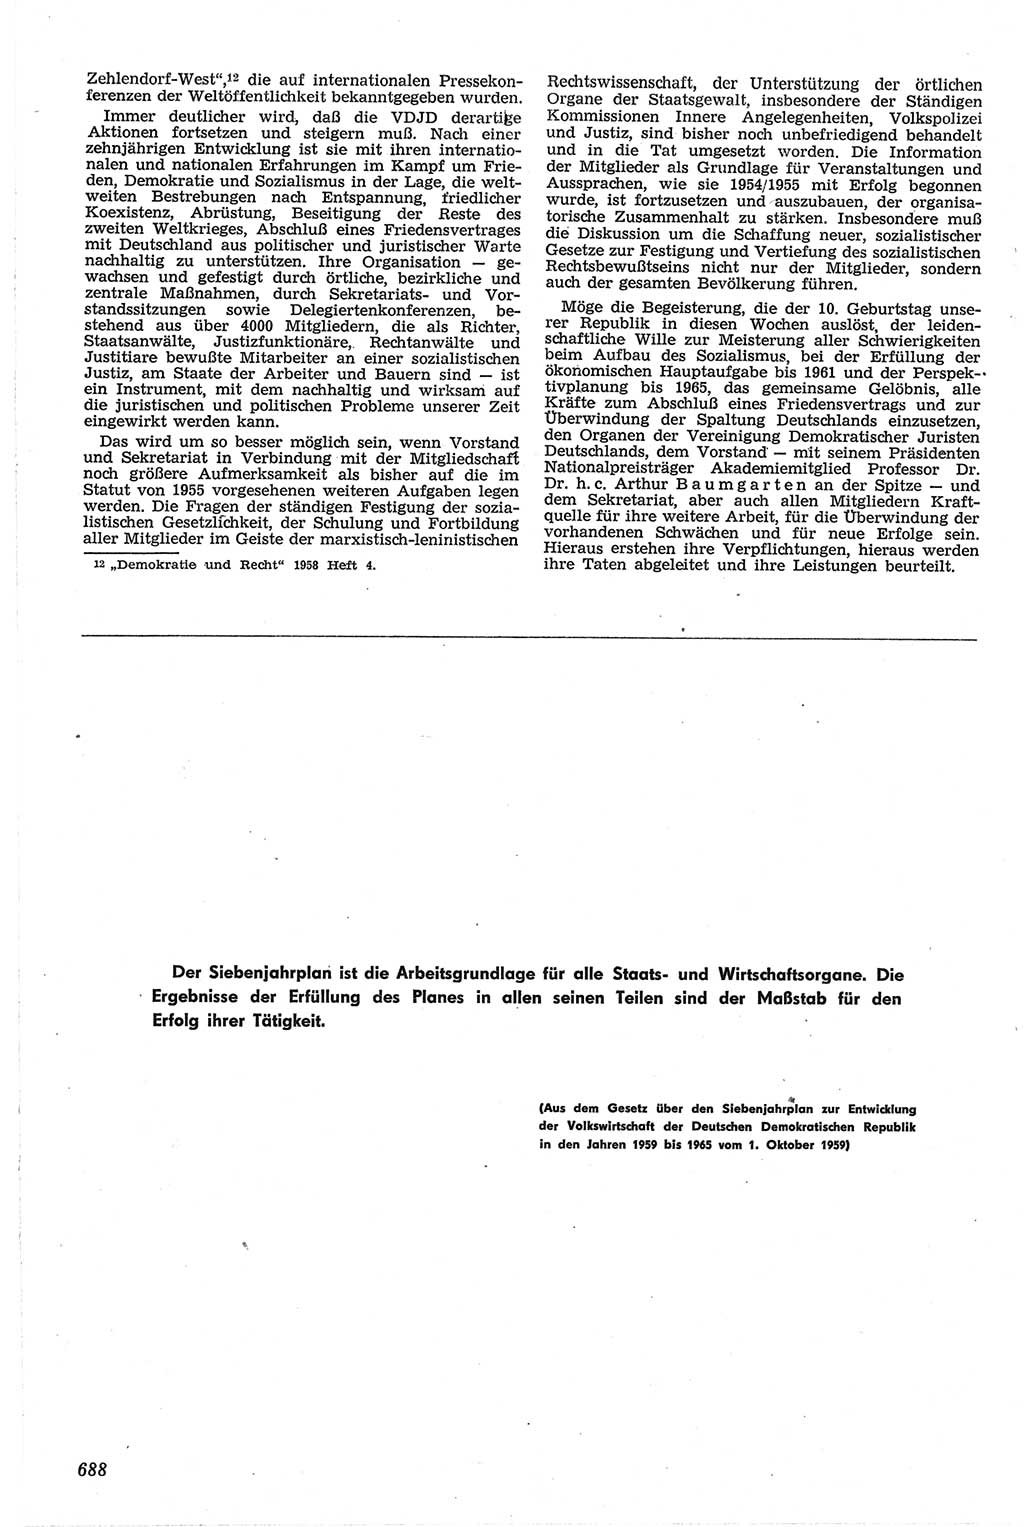 Neue Justiz (NJ), Zeitschrift für Recht und Rechtswissenschaft [Deutsche Demokratische Republik (DDR)], 13. Jahrgang 1959, Seite 688 (NJ DDR 1959, S. 688)